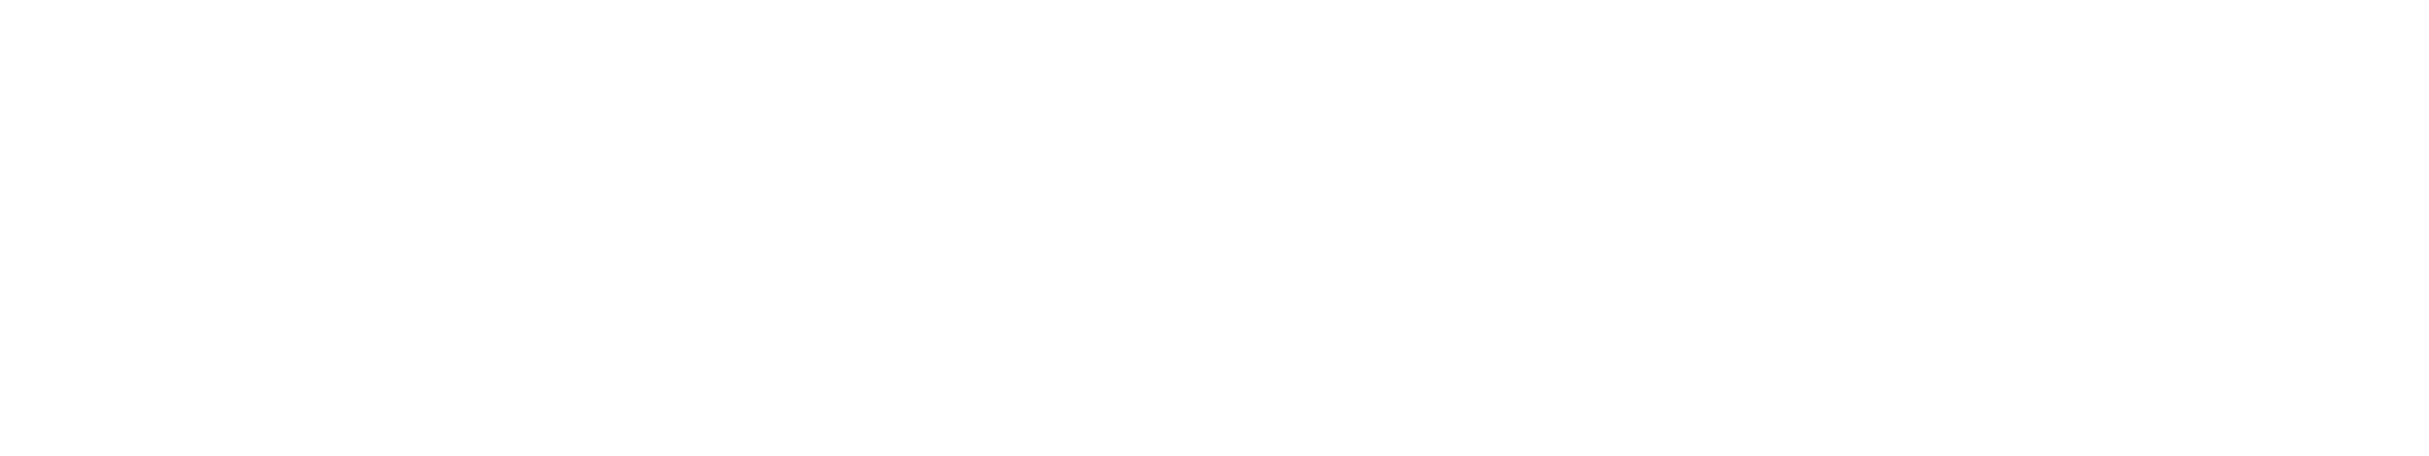 Lakehouse-logo-final-white-1